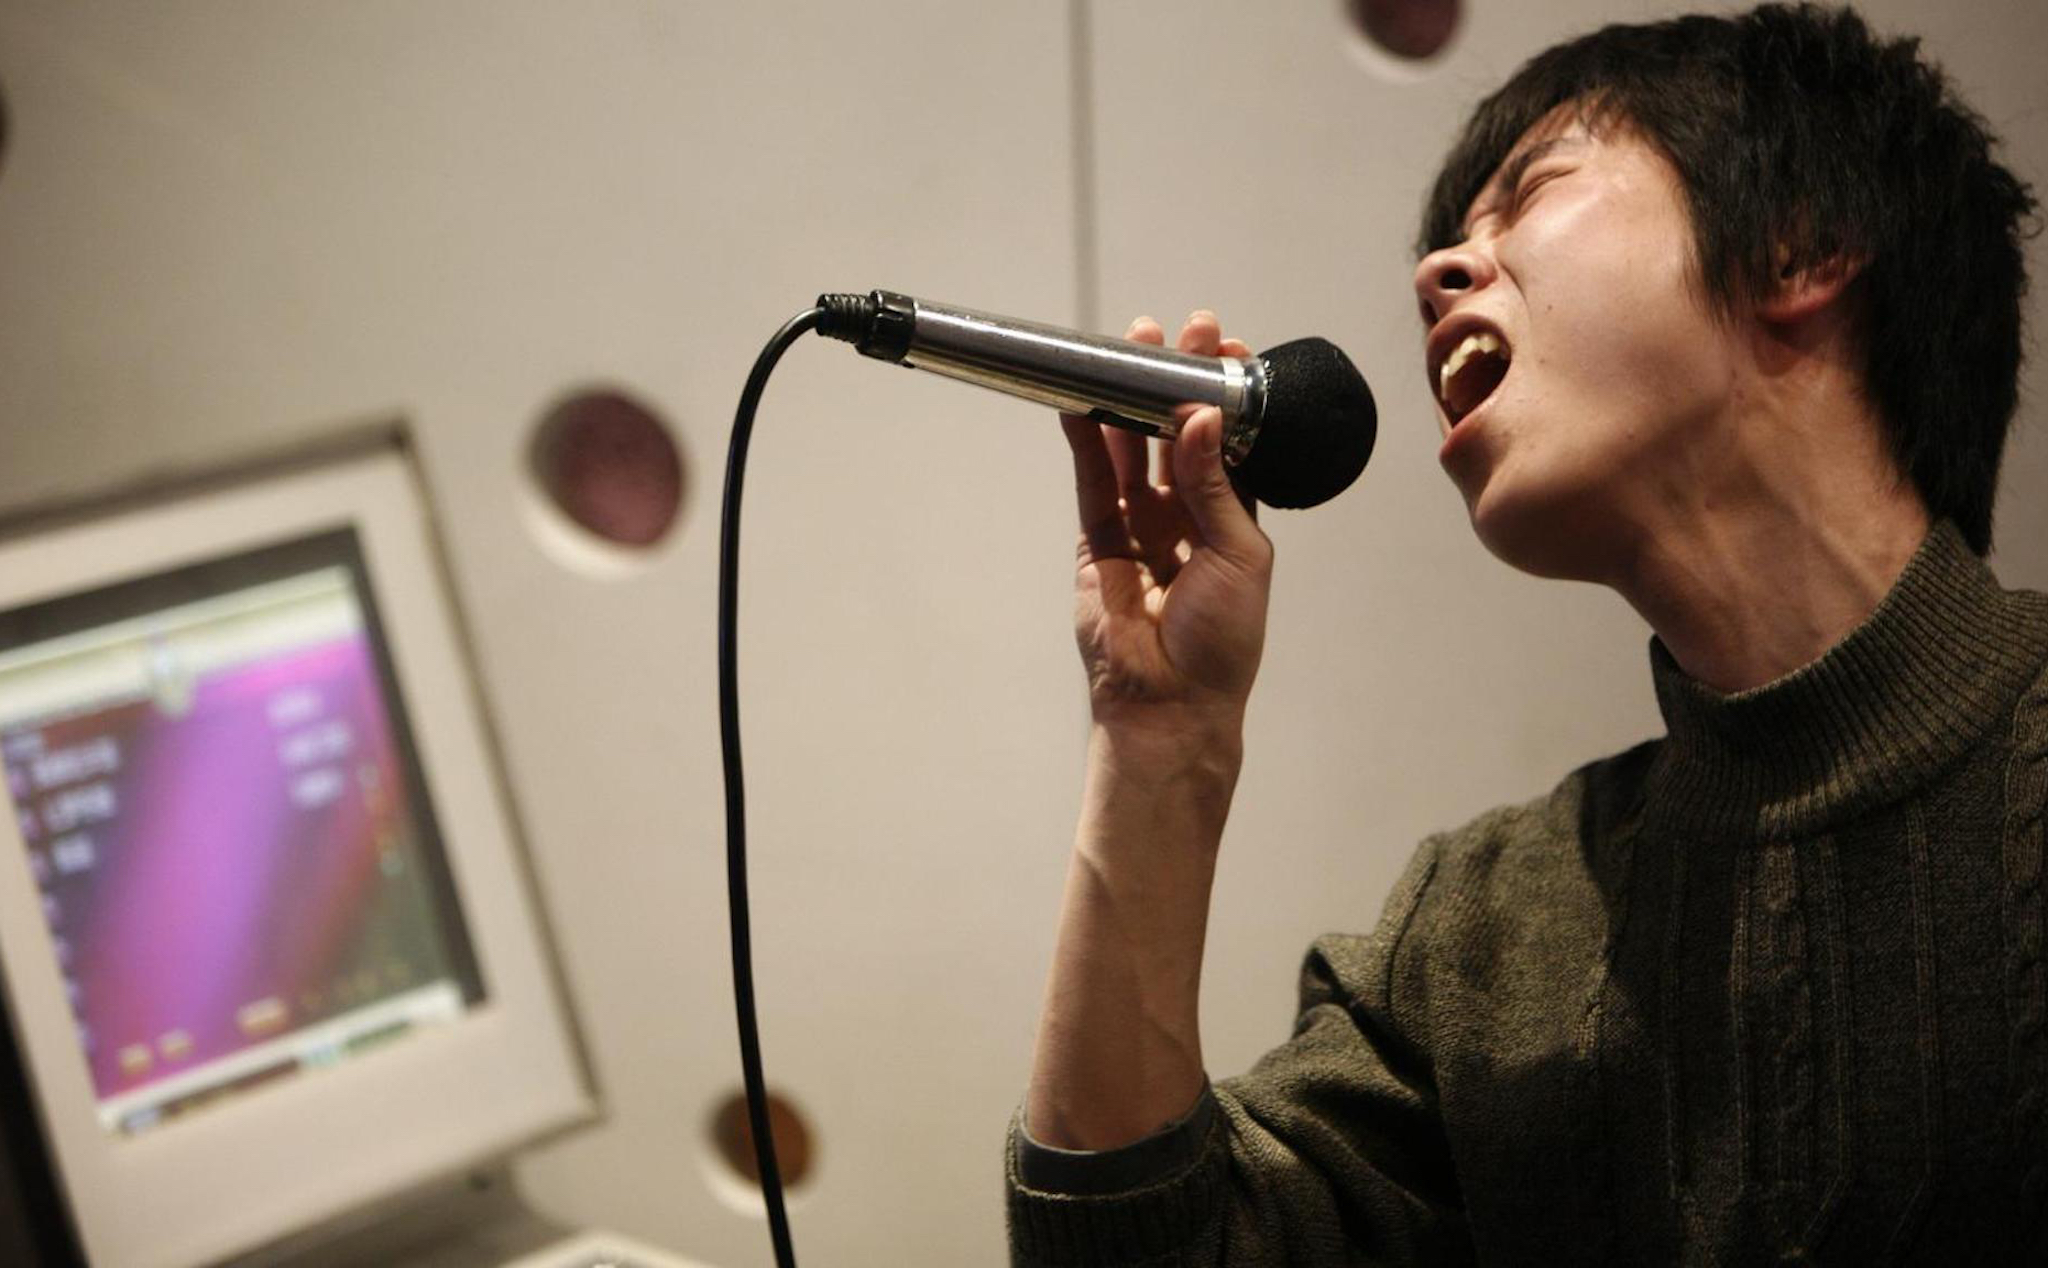 Trung Quốc sẽ cấm những bài hát “có nội dung không phù hợp” khỏi các tụ điểm karaoke